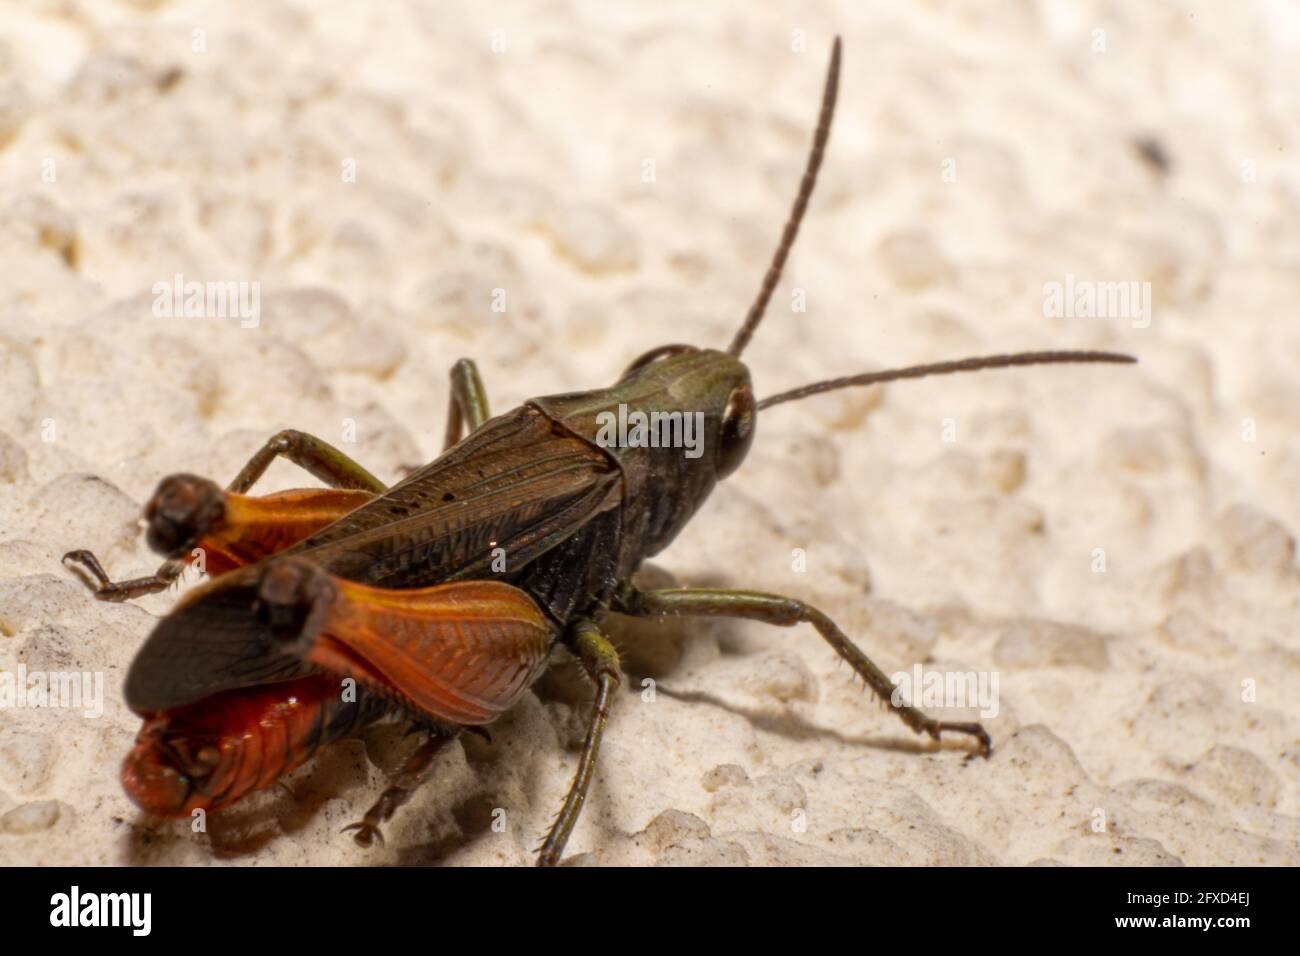 Rotbeinige Grasshopper, Landwirtschaftspest, Melanoplus femurrubrum specie, Heuschrecke auf städtischen Räumen, Heuschrecke invasive Specie Stockfoto